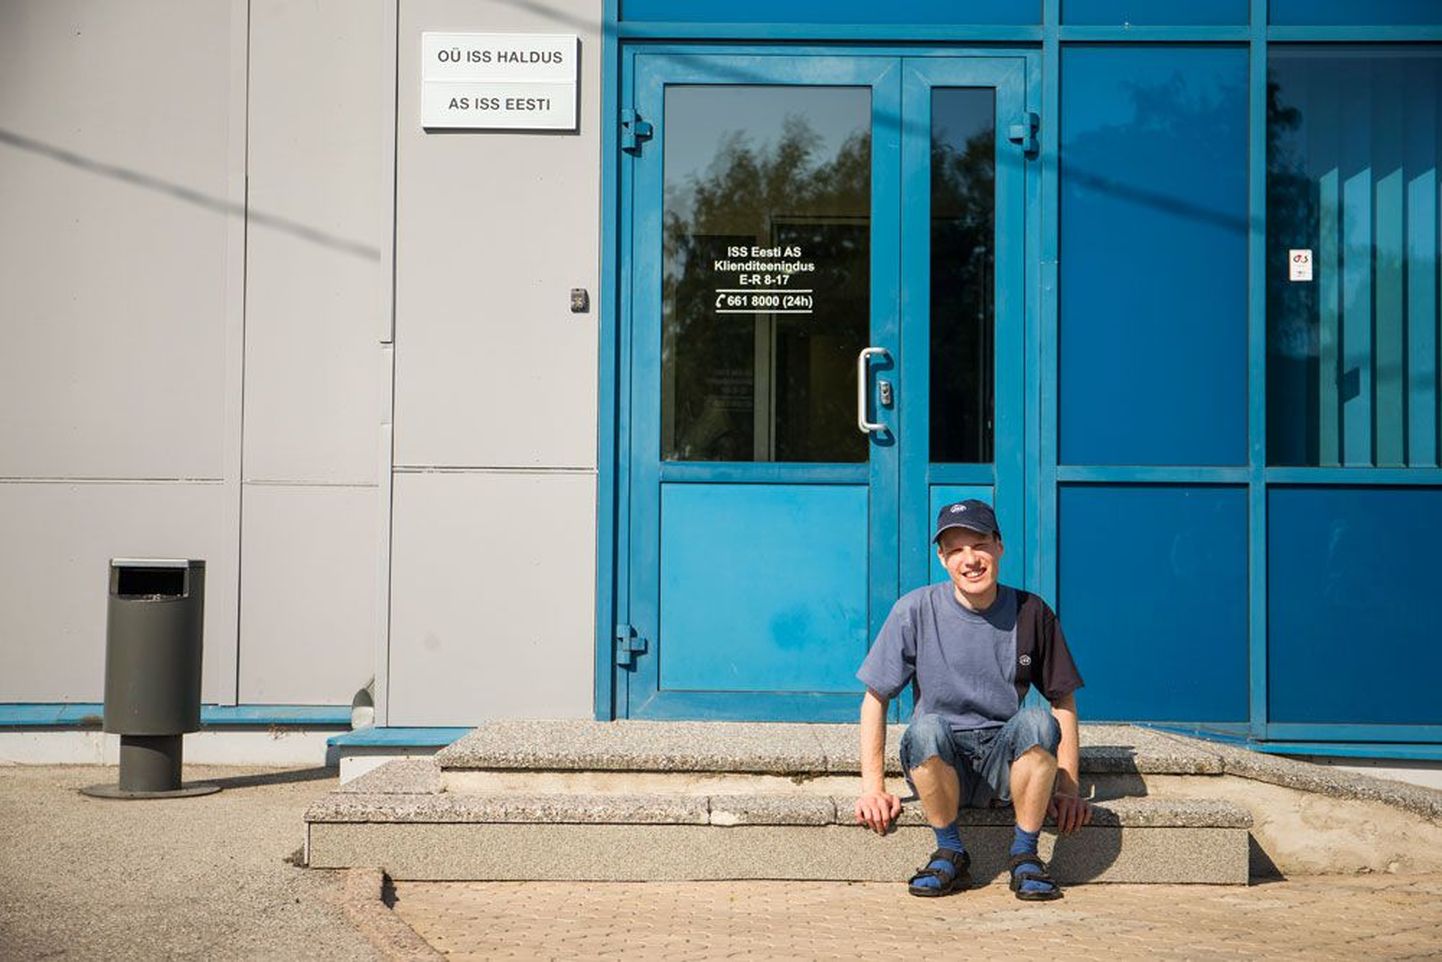 Яанус Лехисте, работающий в фирме ISS Eesti специалистом по уборке, несмотря на слабое зрение, отлично справляется со своими обязанностями.